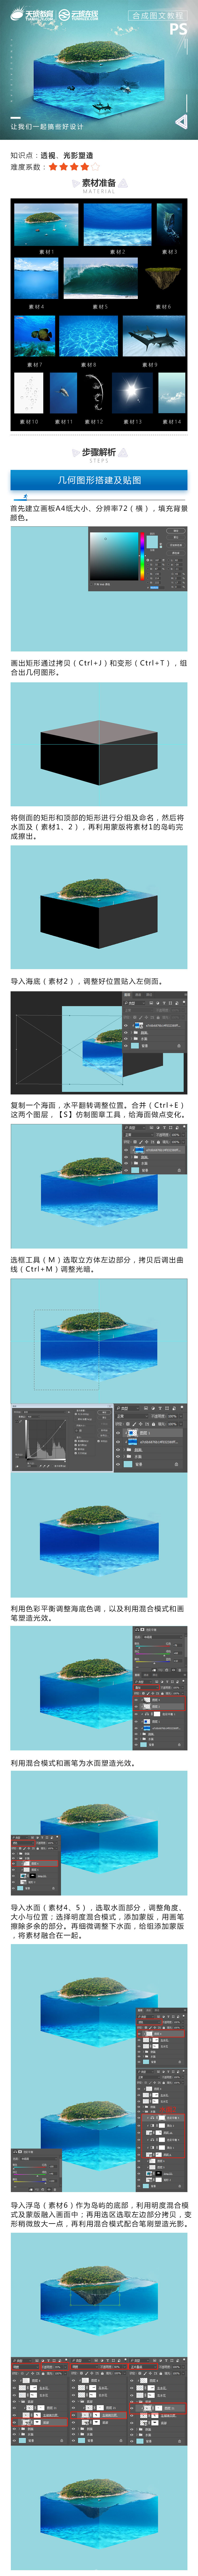 Photoshop合成立体主题风格的水立方海报,PS教程,素材中国网